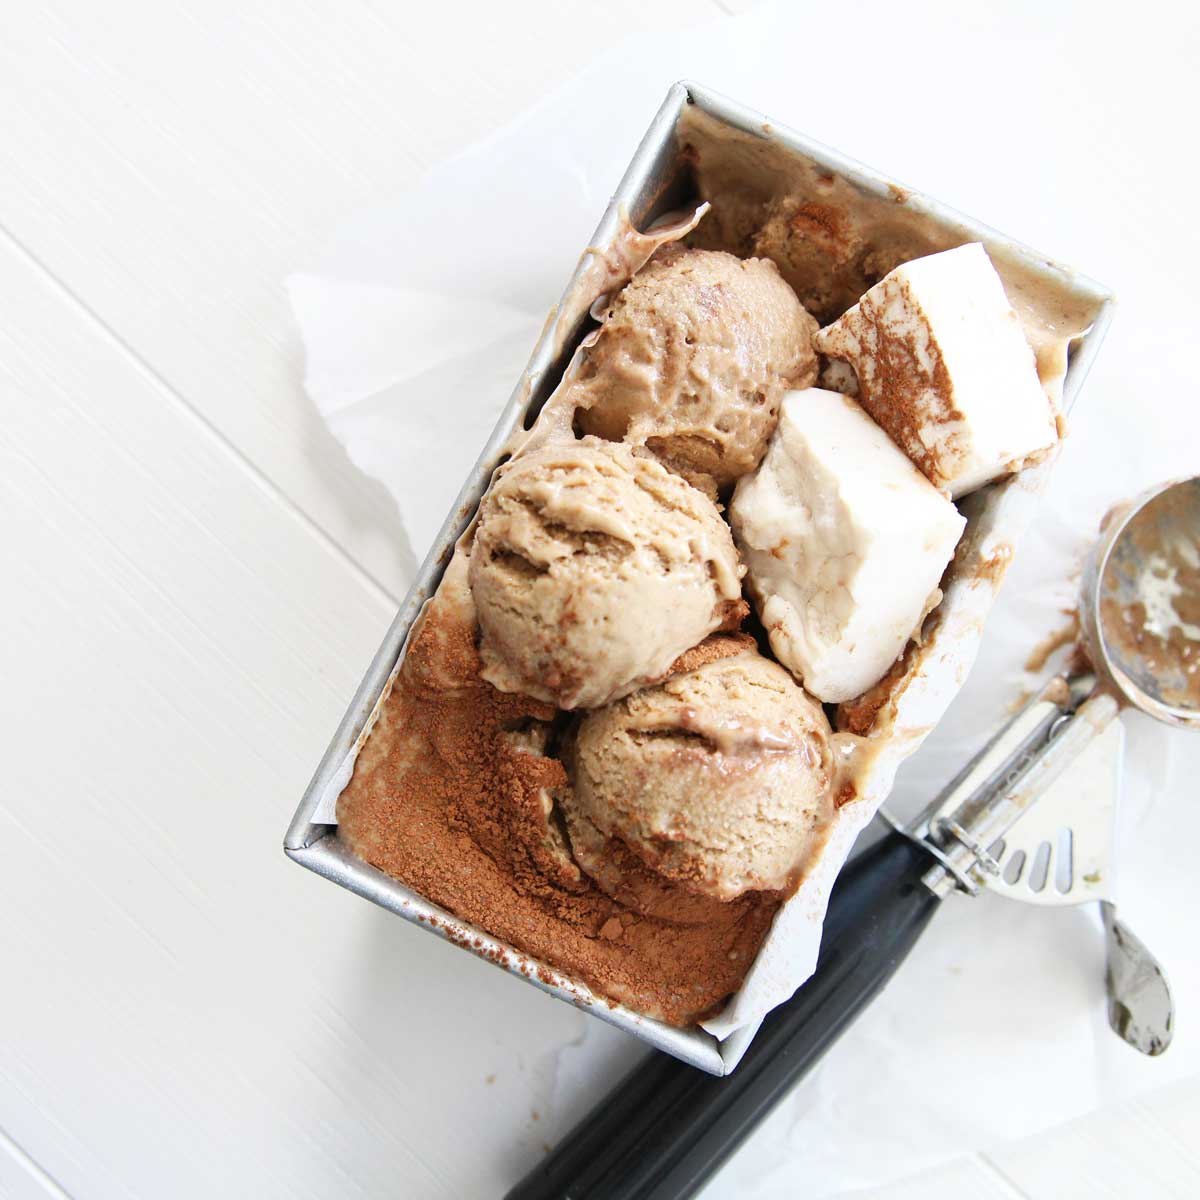 The Best Vegan Tiramisu Nice Cream Recipe - stuffed french bread